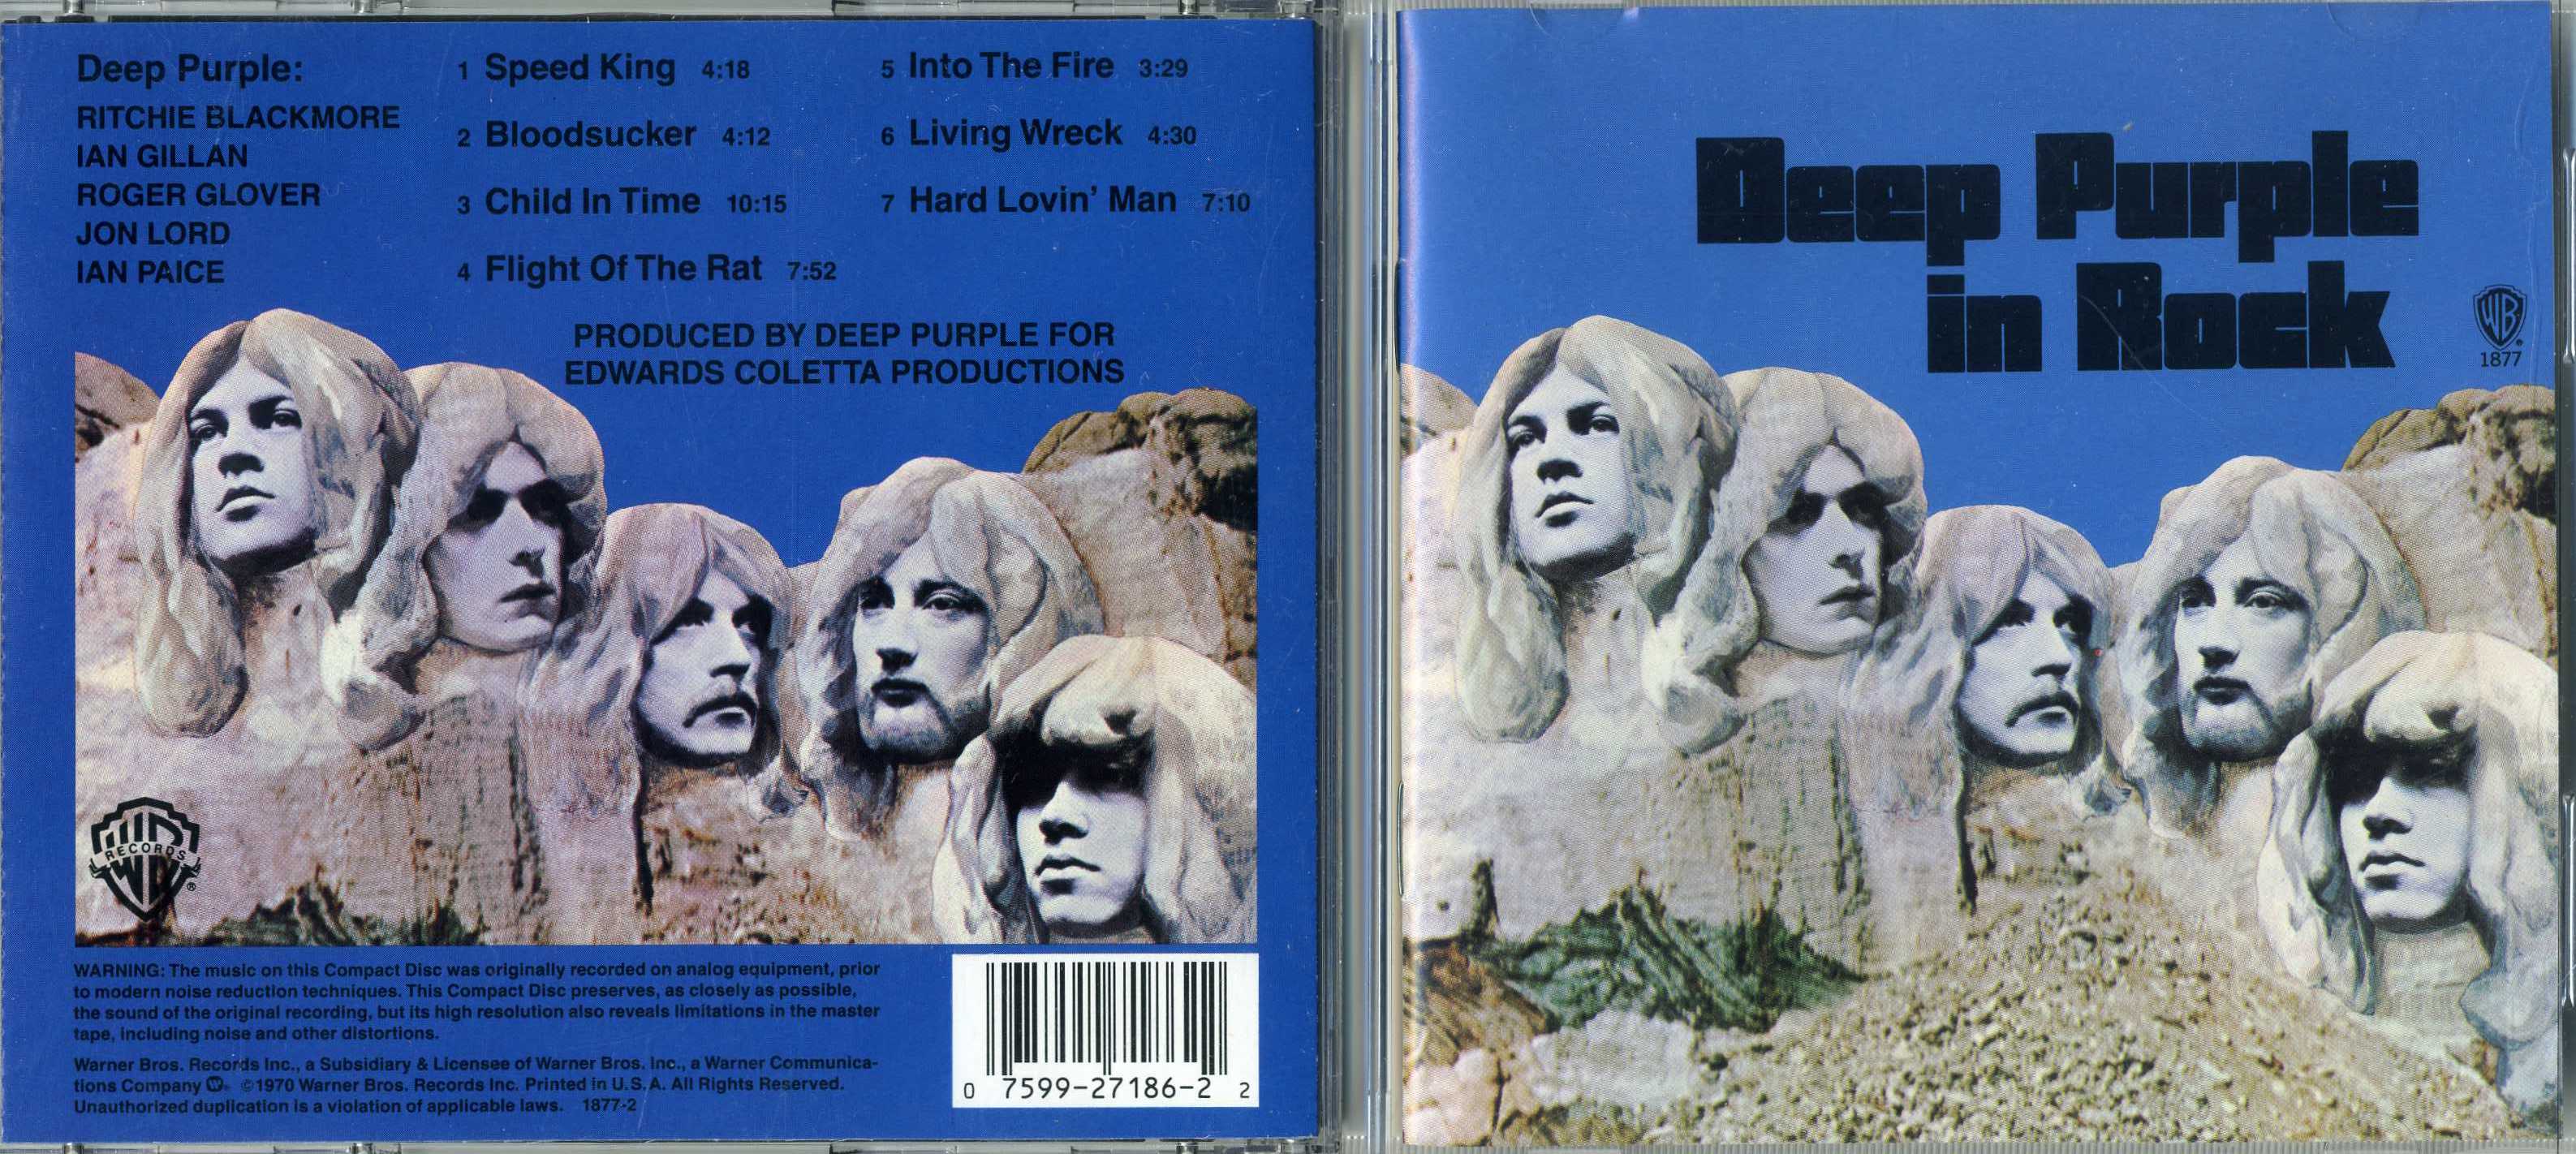 Дип перпл хиты. Обложка альбома дип перпл ин рок. Deep Purple in Rock 1970 LP. Deep Purple in Rock обложка. Deep Purple in Rock 1970 обложка.